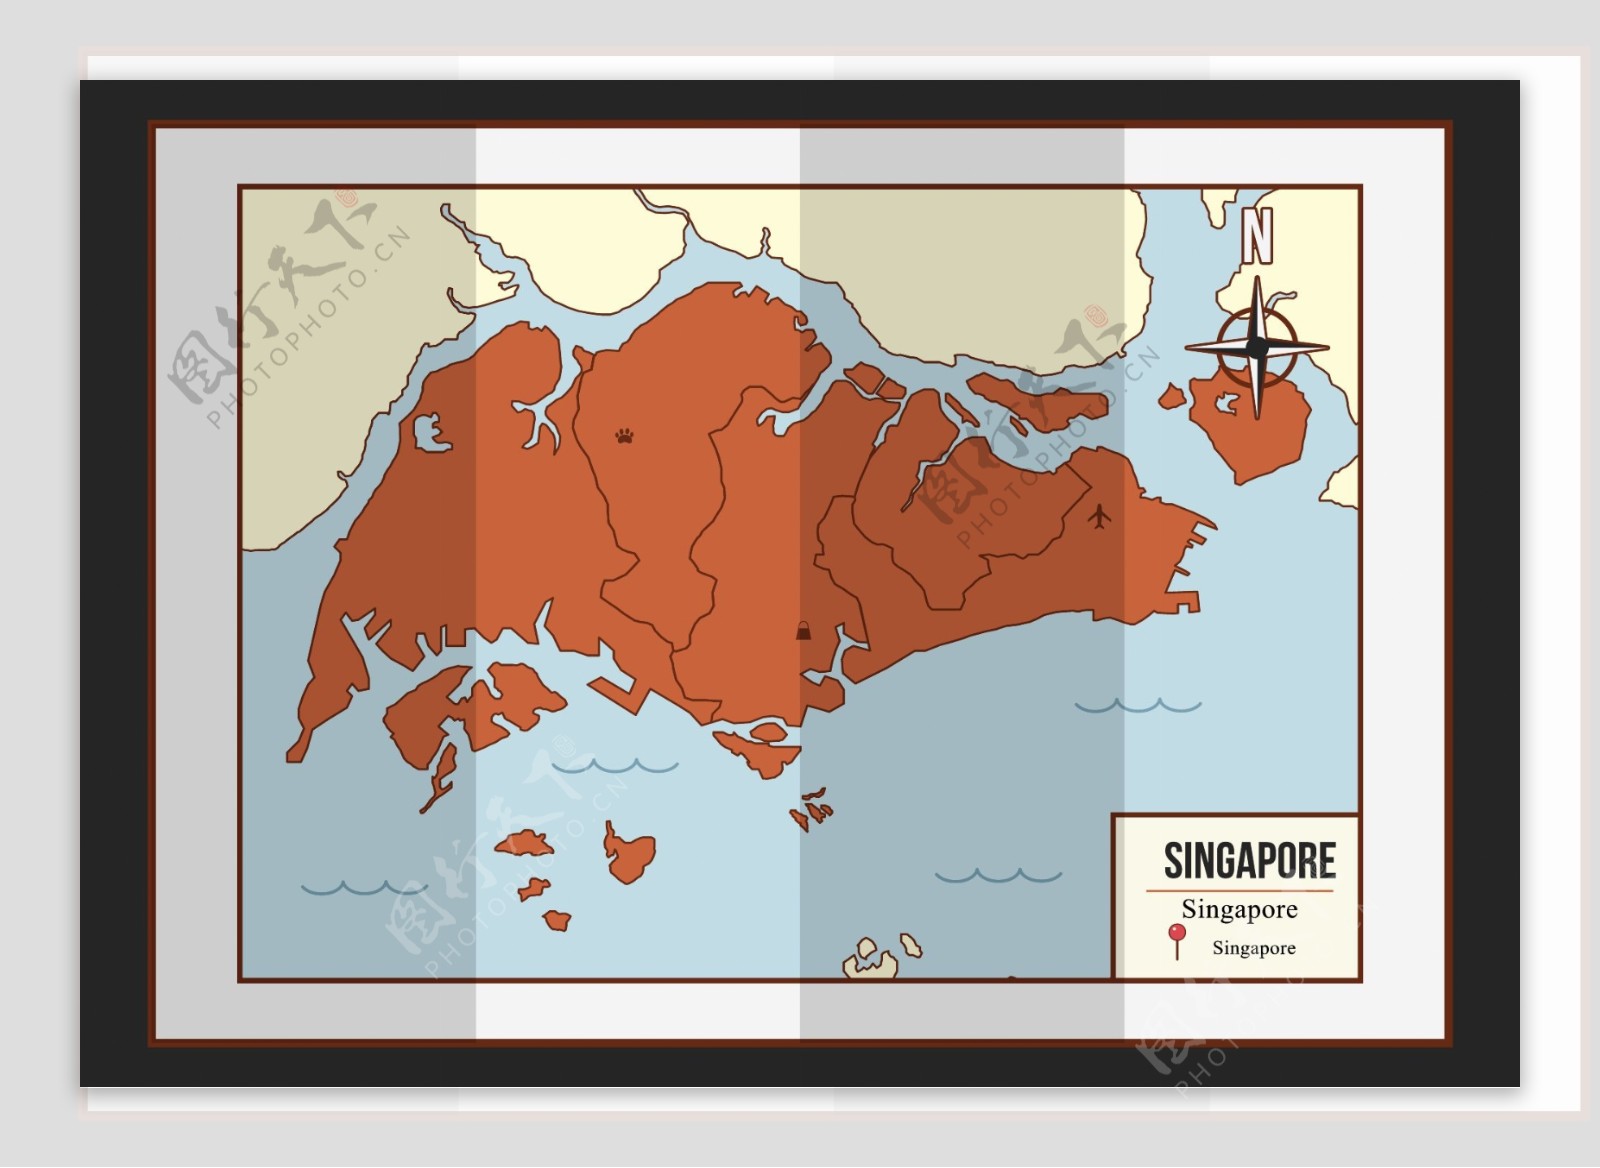 新加坡地貌图 - 新加坡地图 - 地理教师网